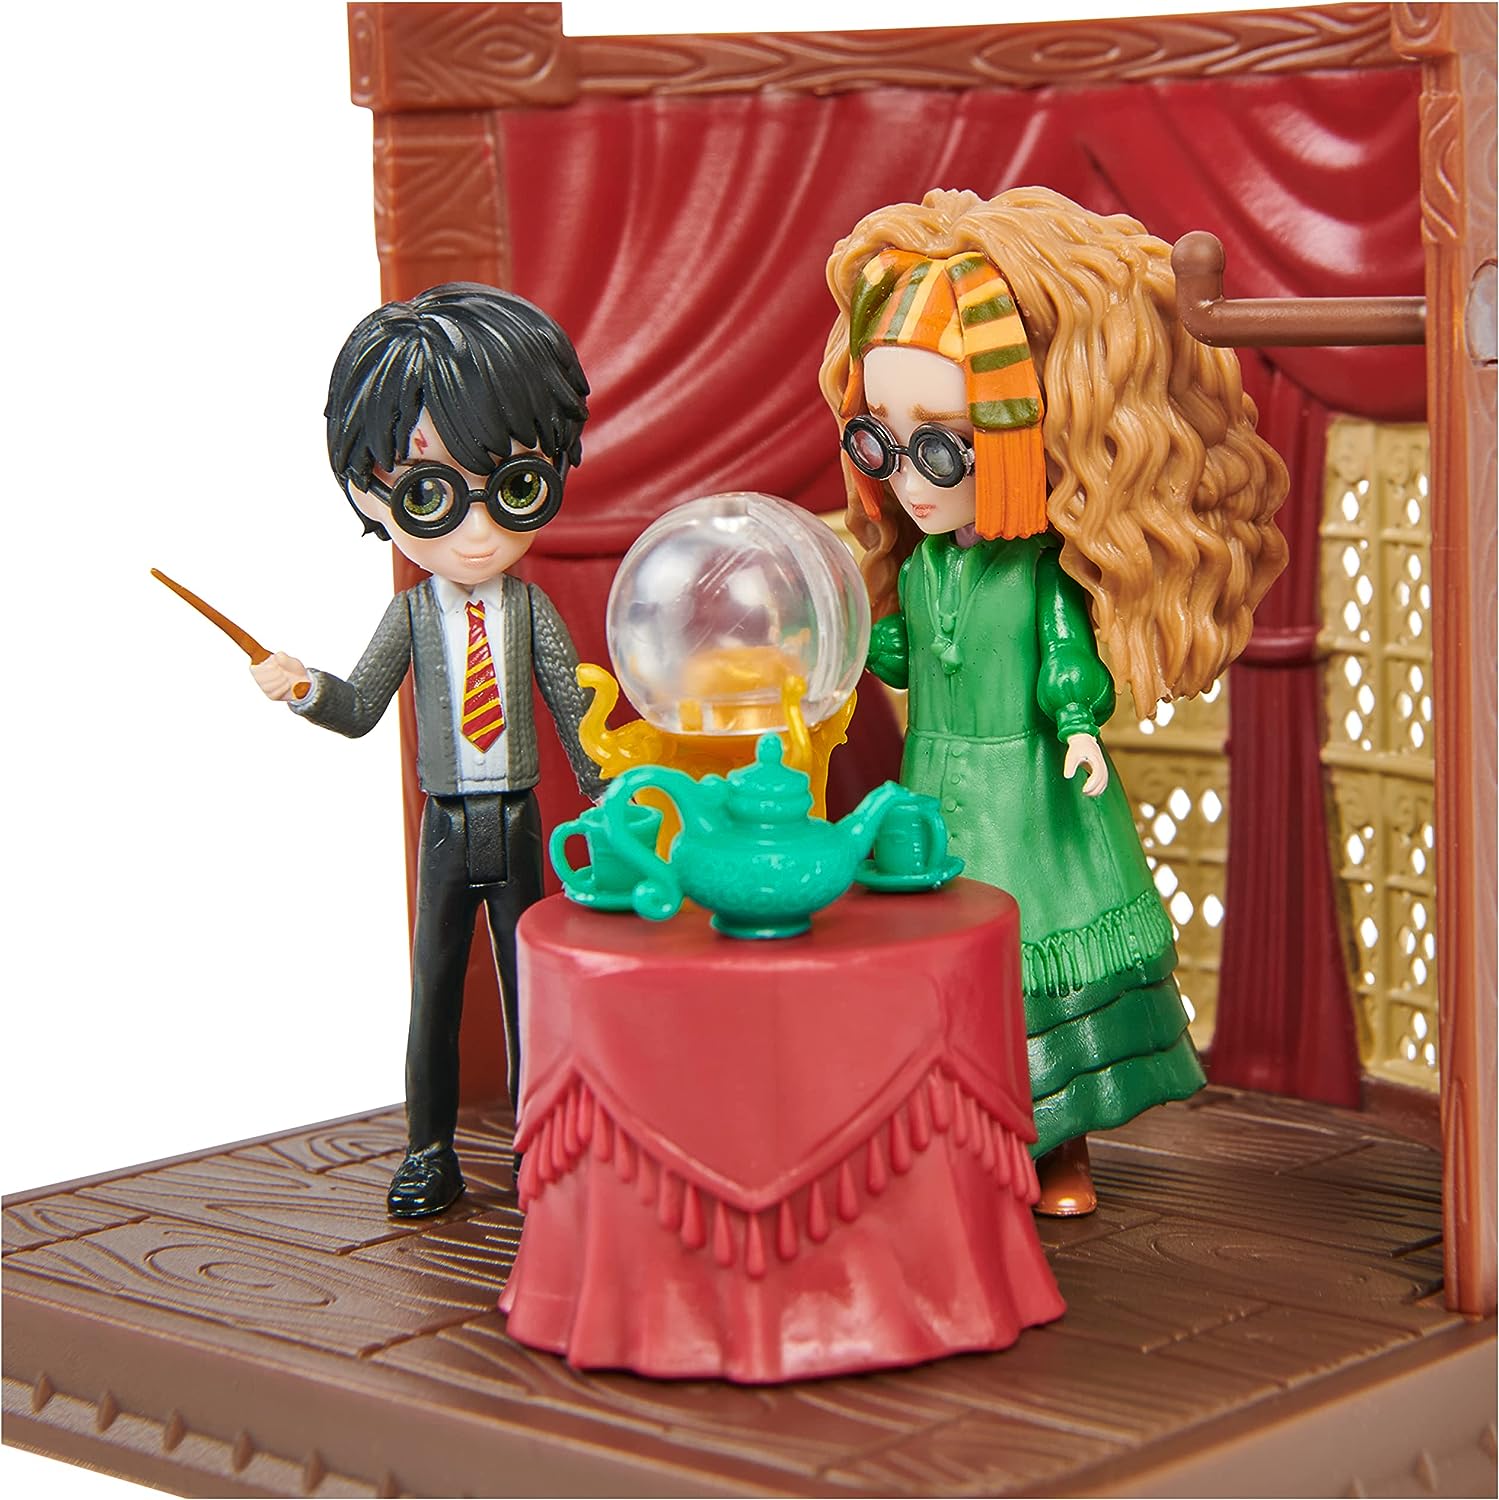 Ww Magical Minidivinationplyst-Profr Trelawney & Harry